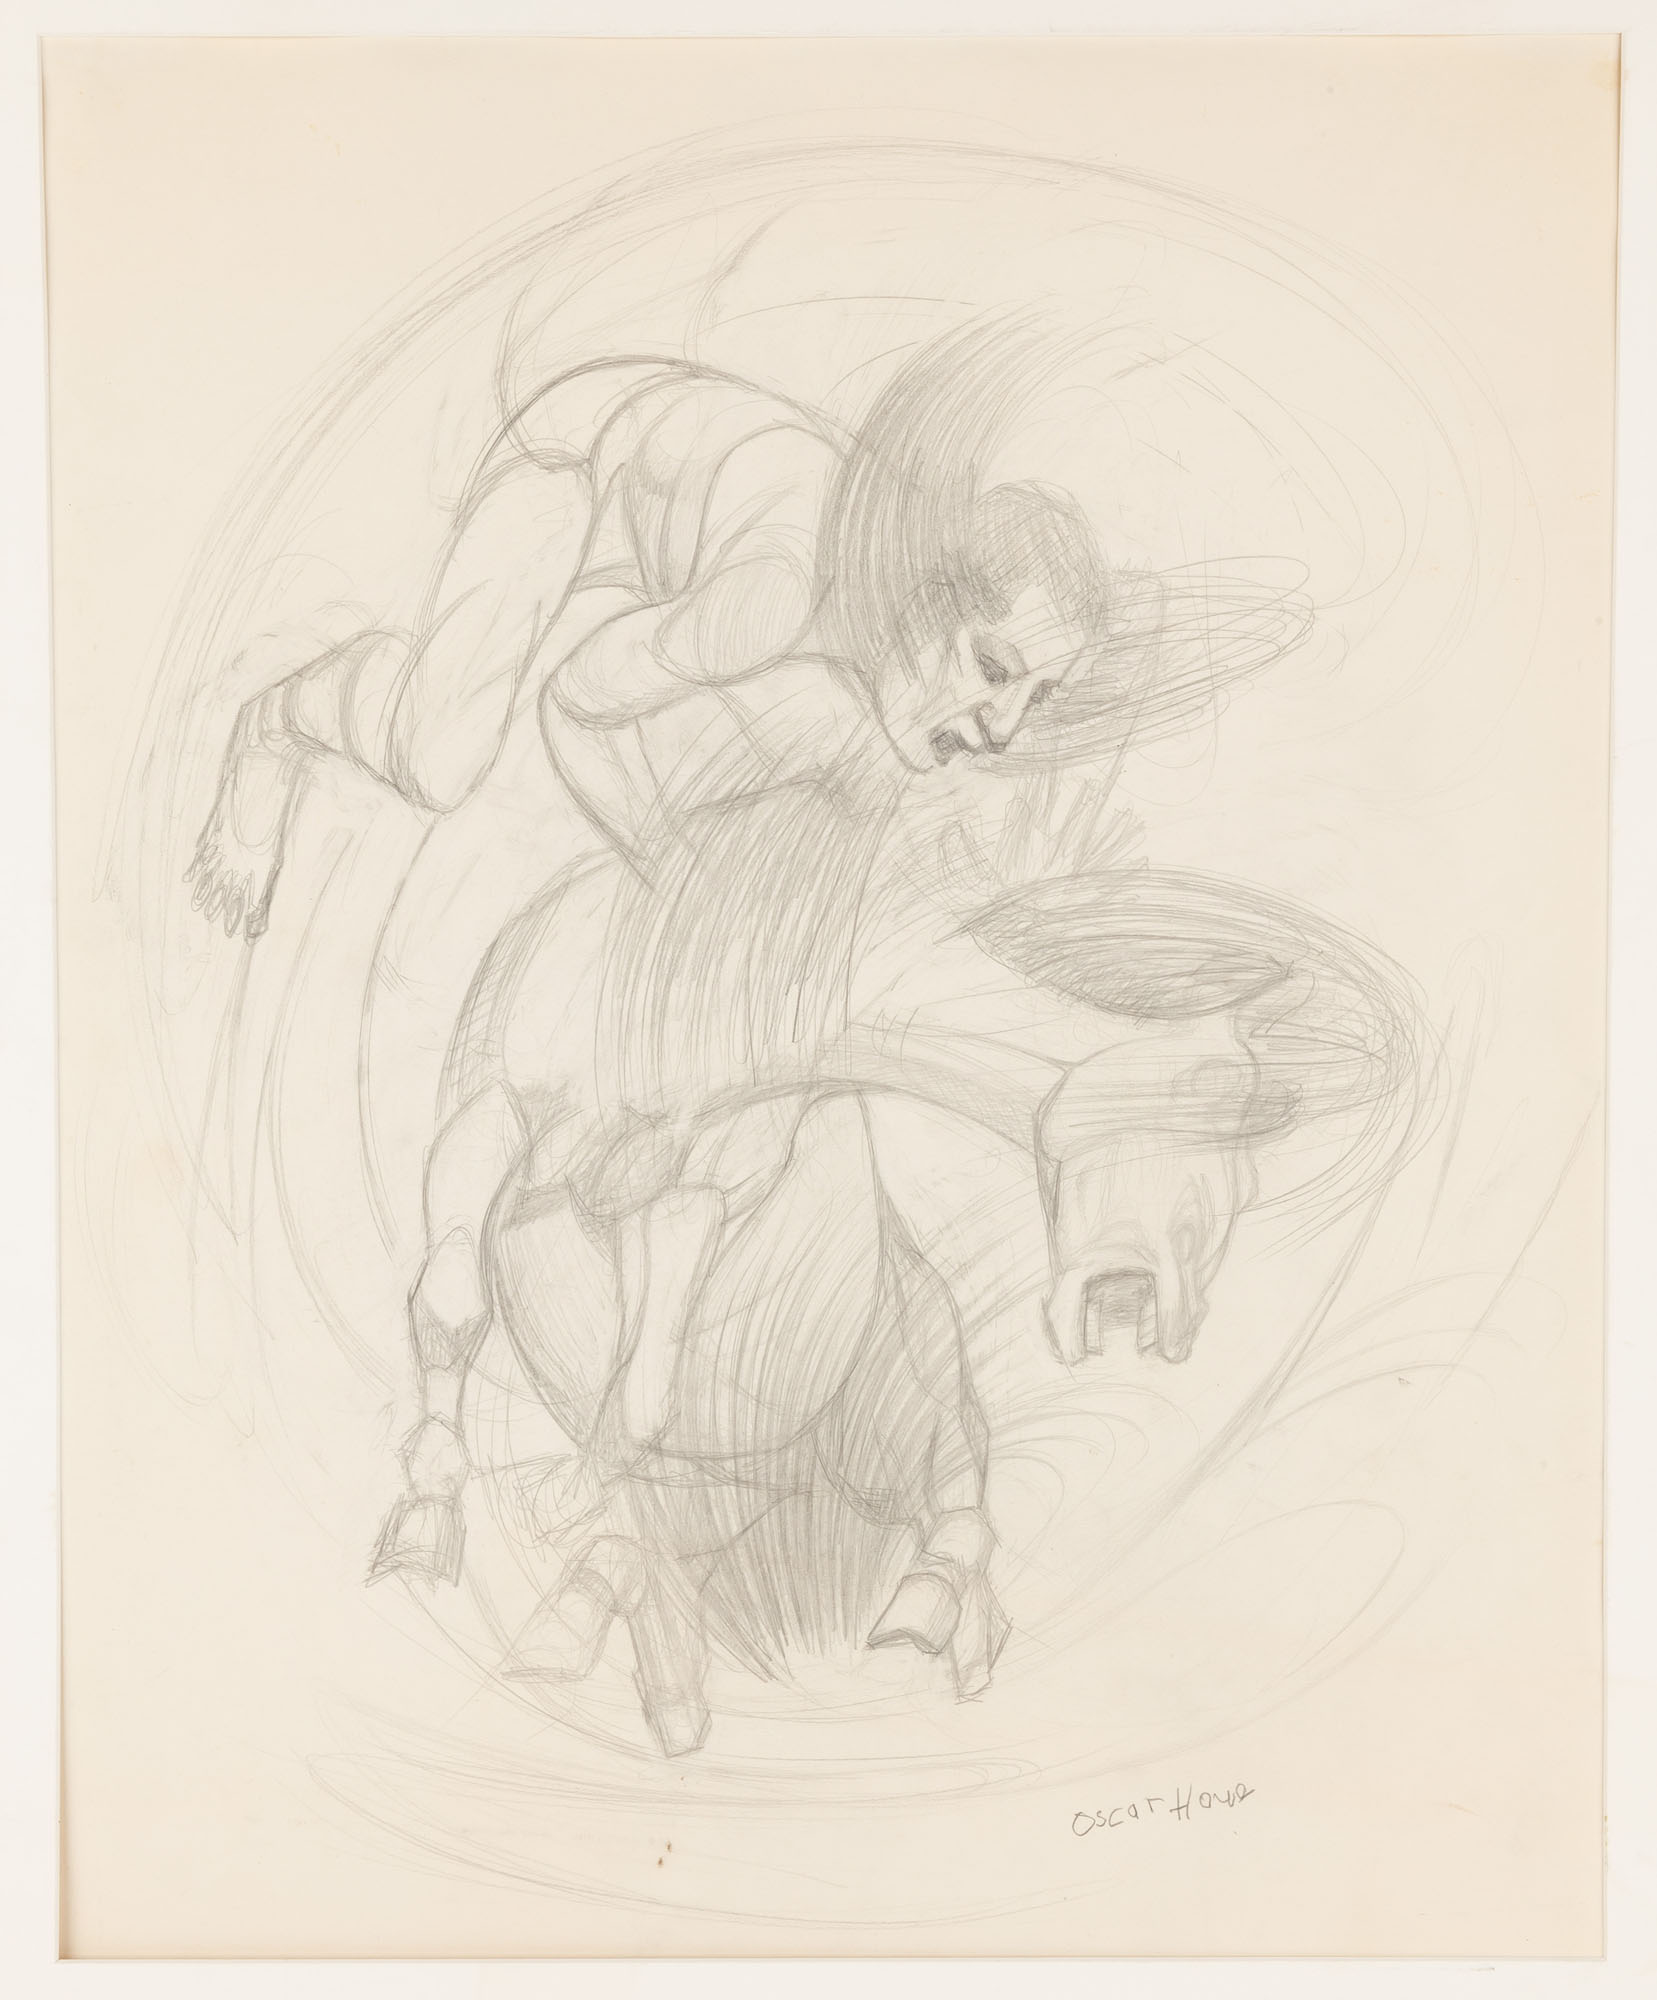 Oscar Howe (American/Yanktonai, 1915-1983) Penicl Drawing